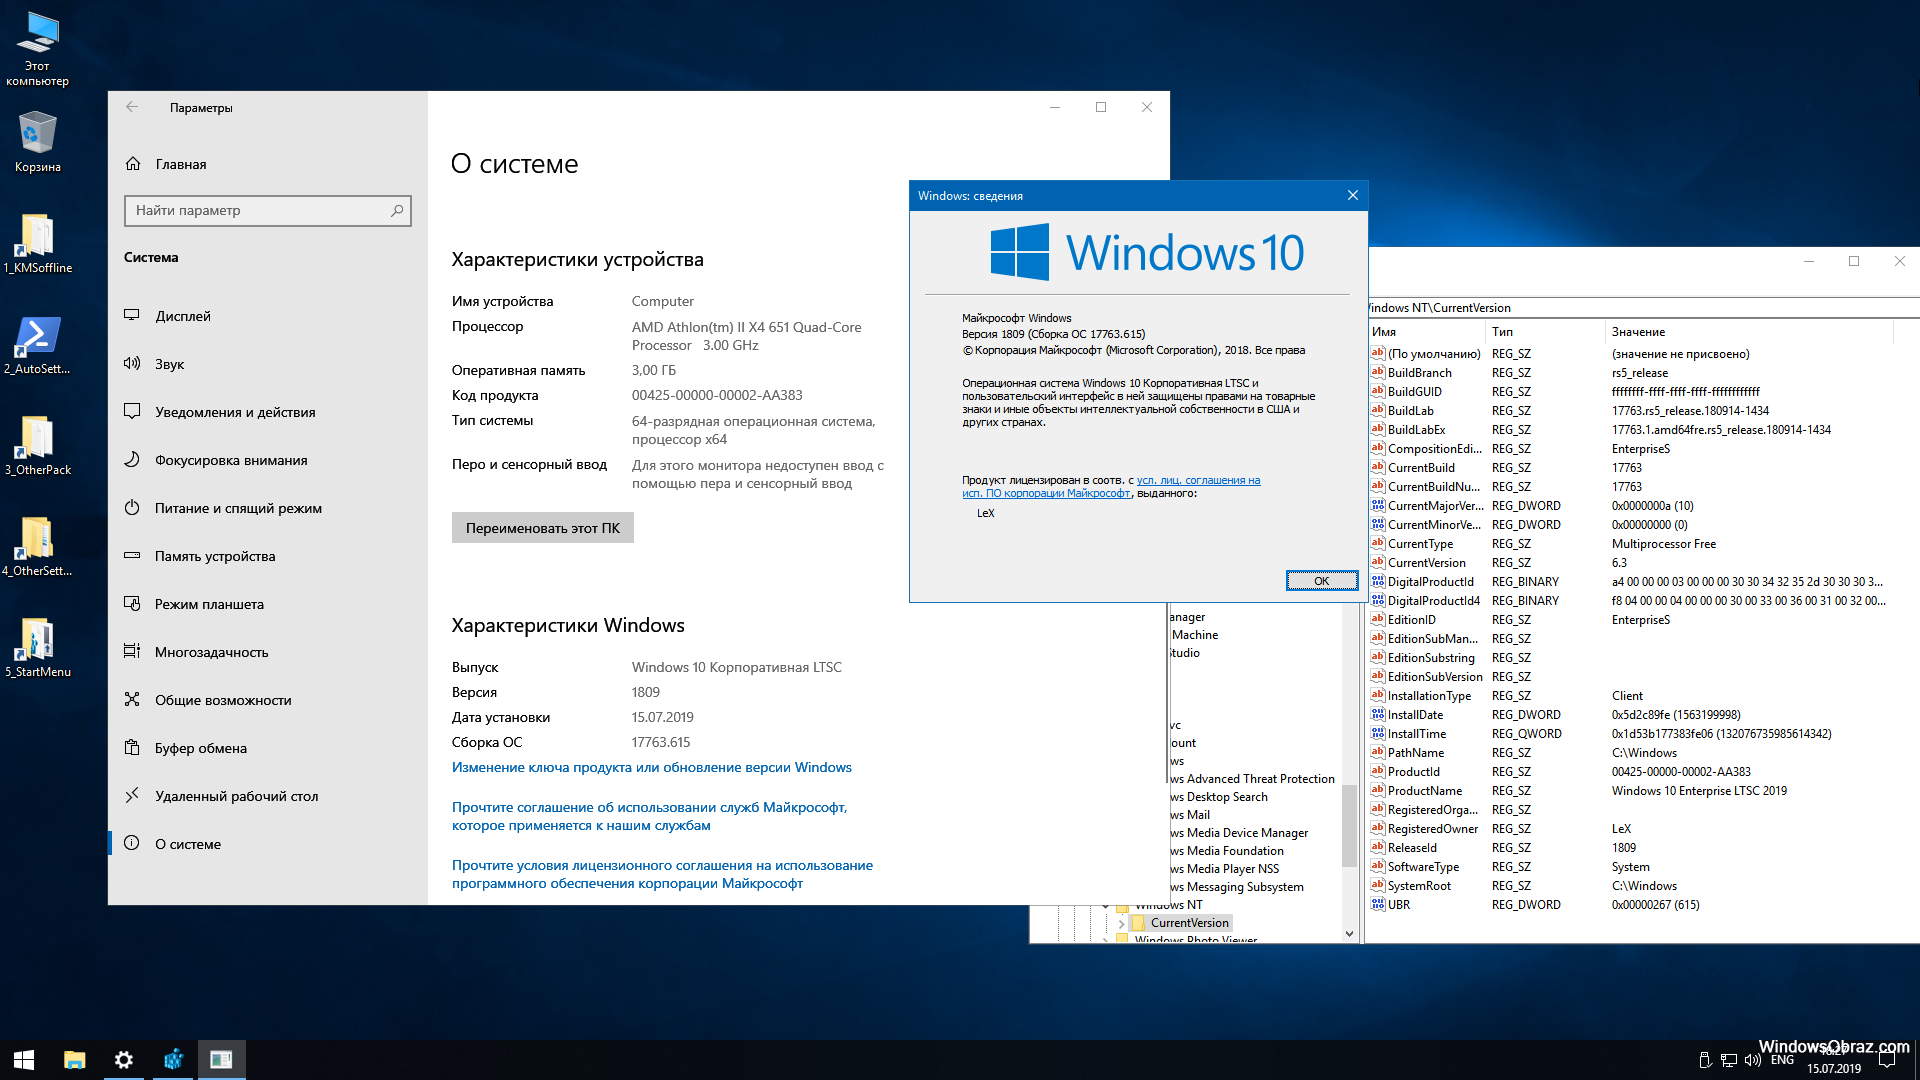 Виндовс 10 про для игр. Windows 10 корпоративная. Виндовс 10 корпоративная LTSC. Windows 10 Enterprise корпоративная) 64 bit. Windows 10 корпоративная LTSC 2019.